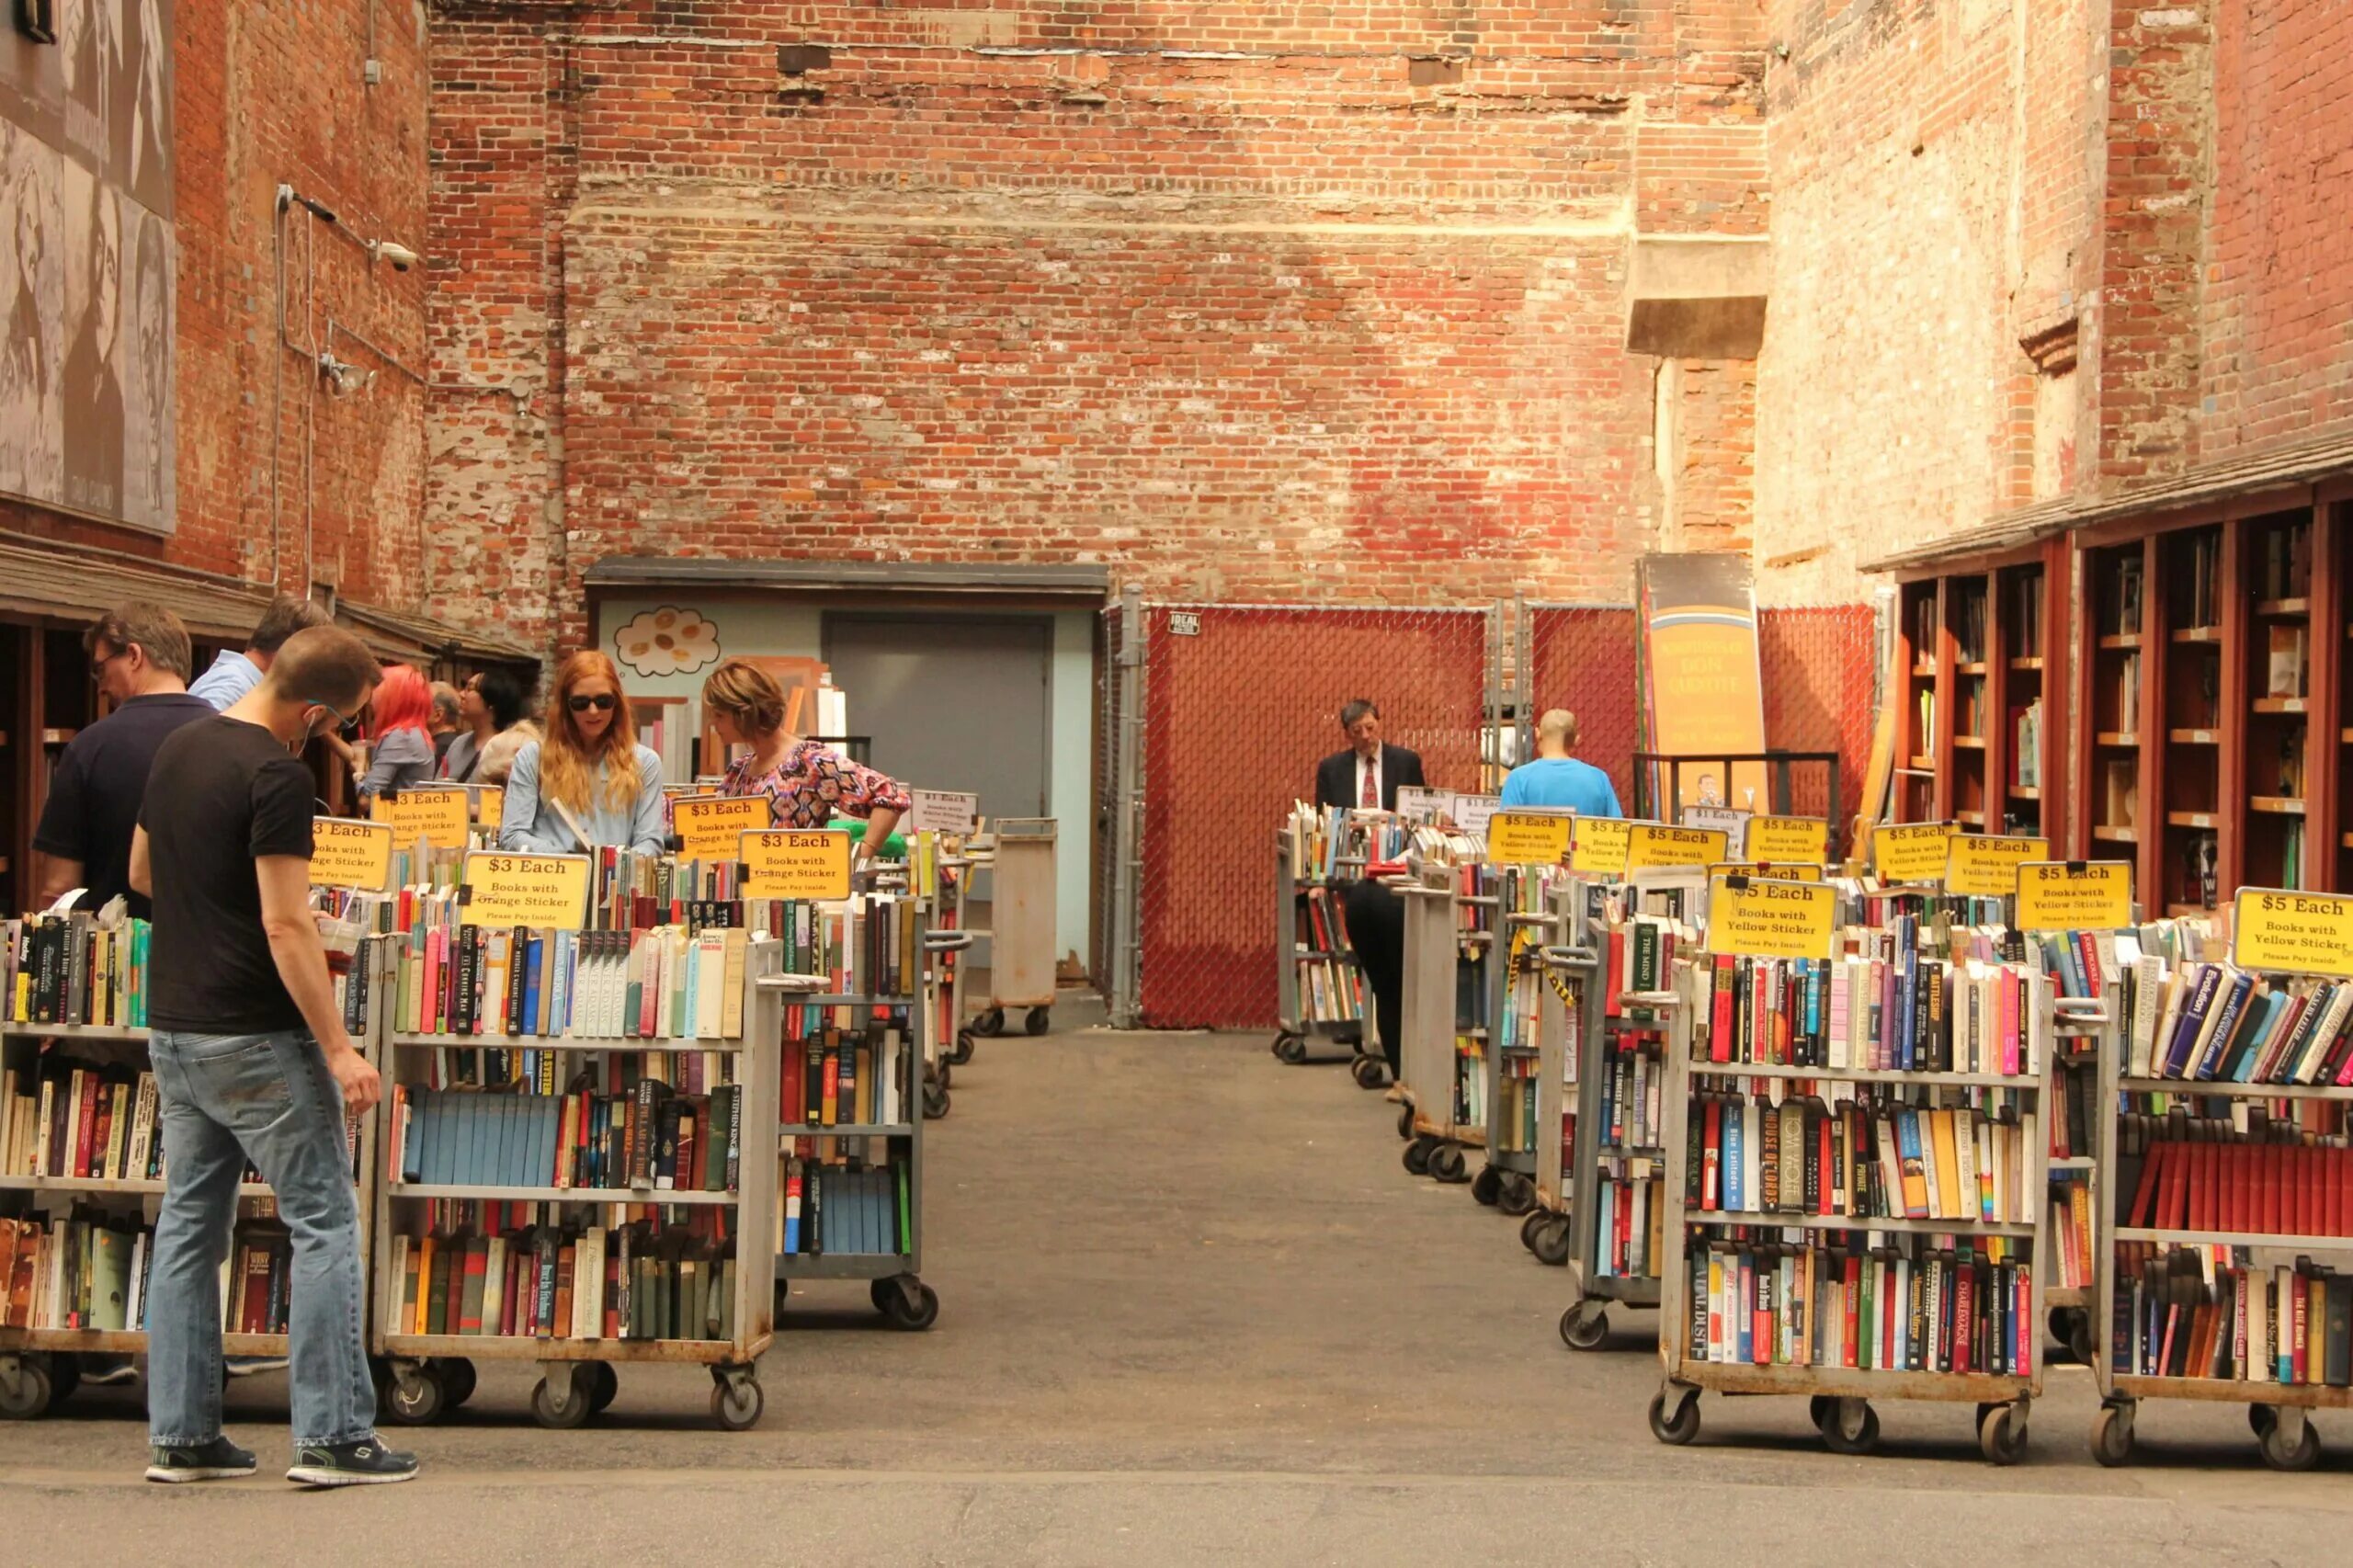 Brattle book shop в Бостоне, США. Бруклинский книжный фестиваль. Центр британской книги фотографии. Плакат Brattle book shop. Shopping books 7